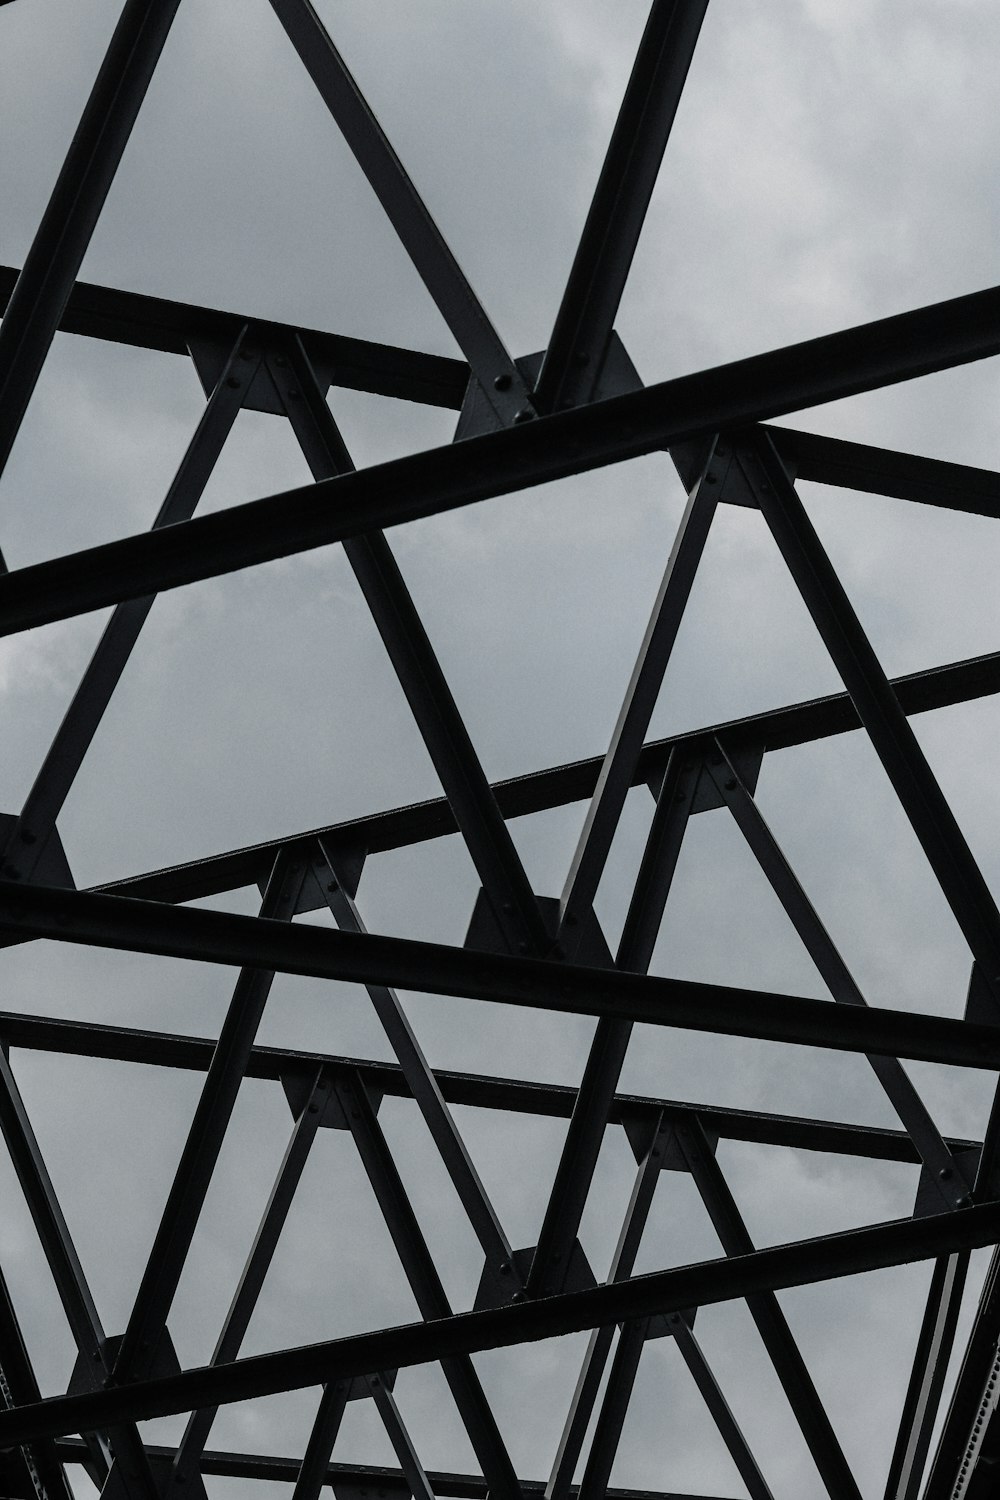 estrutura de metal preto sob o céu azul durante o dia